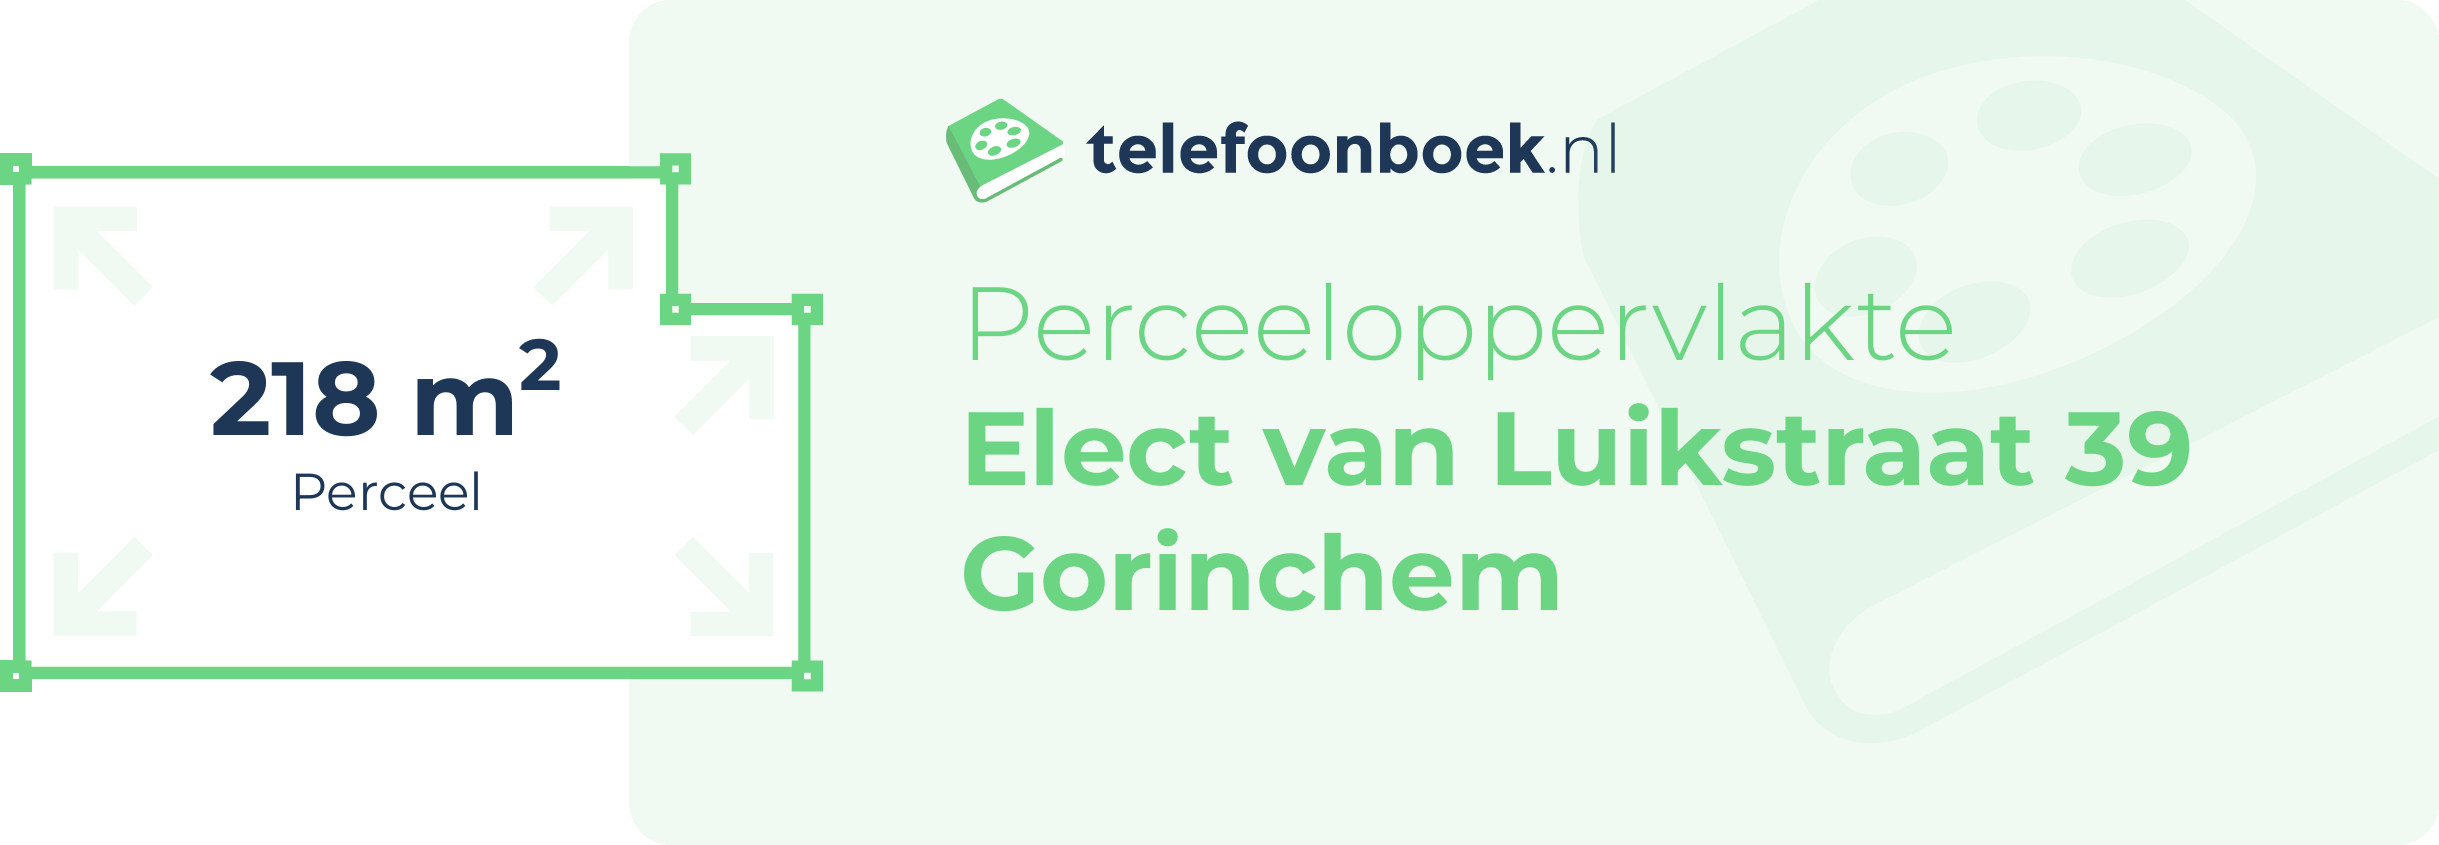 Perceeloppervlakte Elect Van Luikstraat 39 Gorinchem